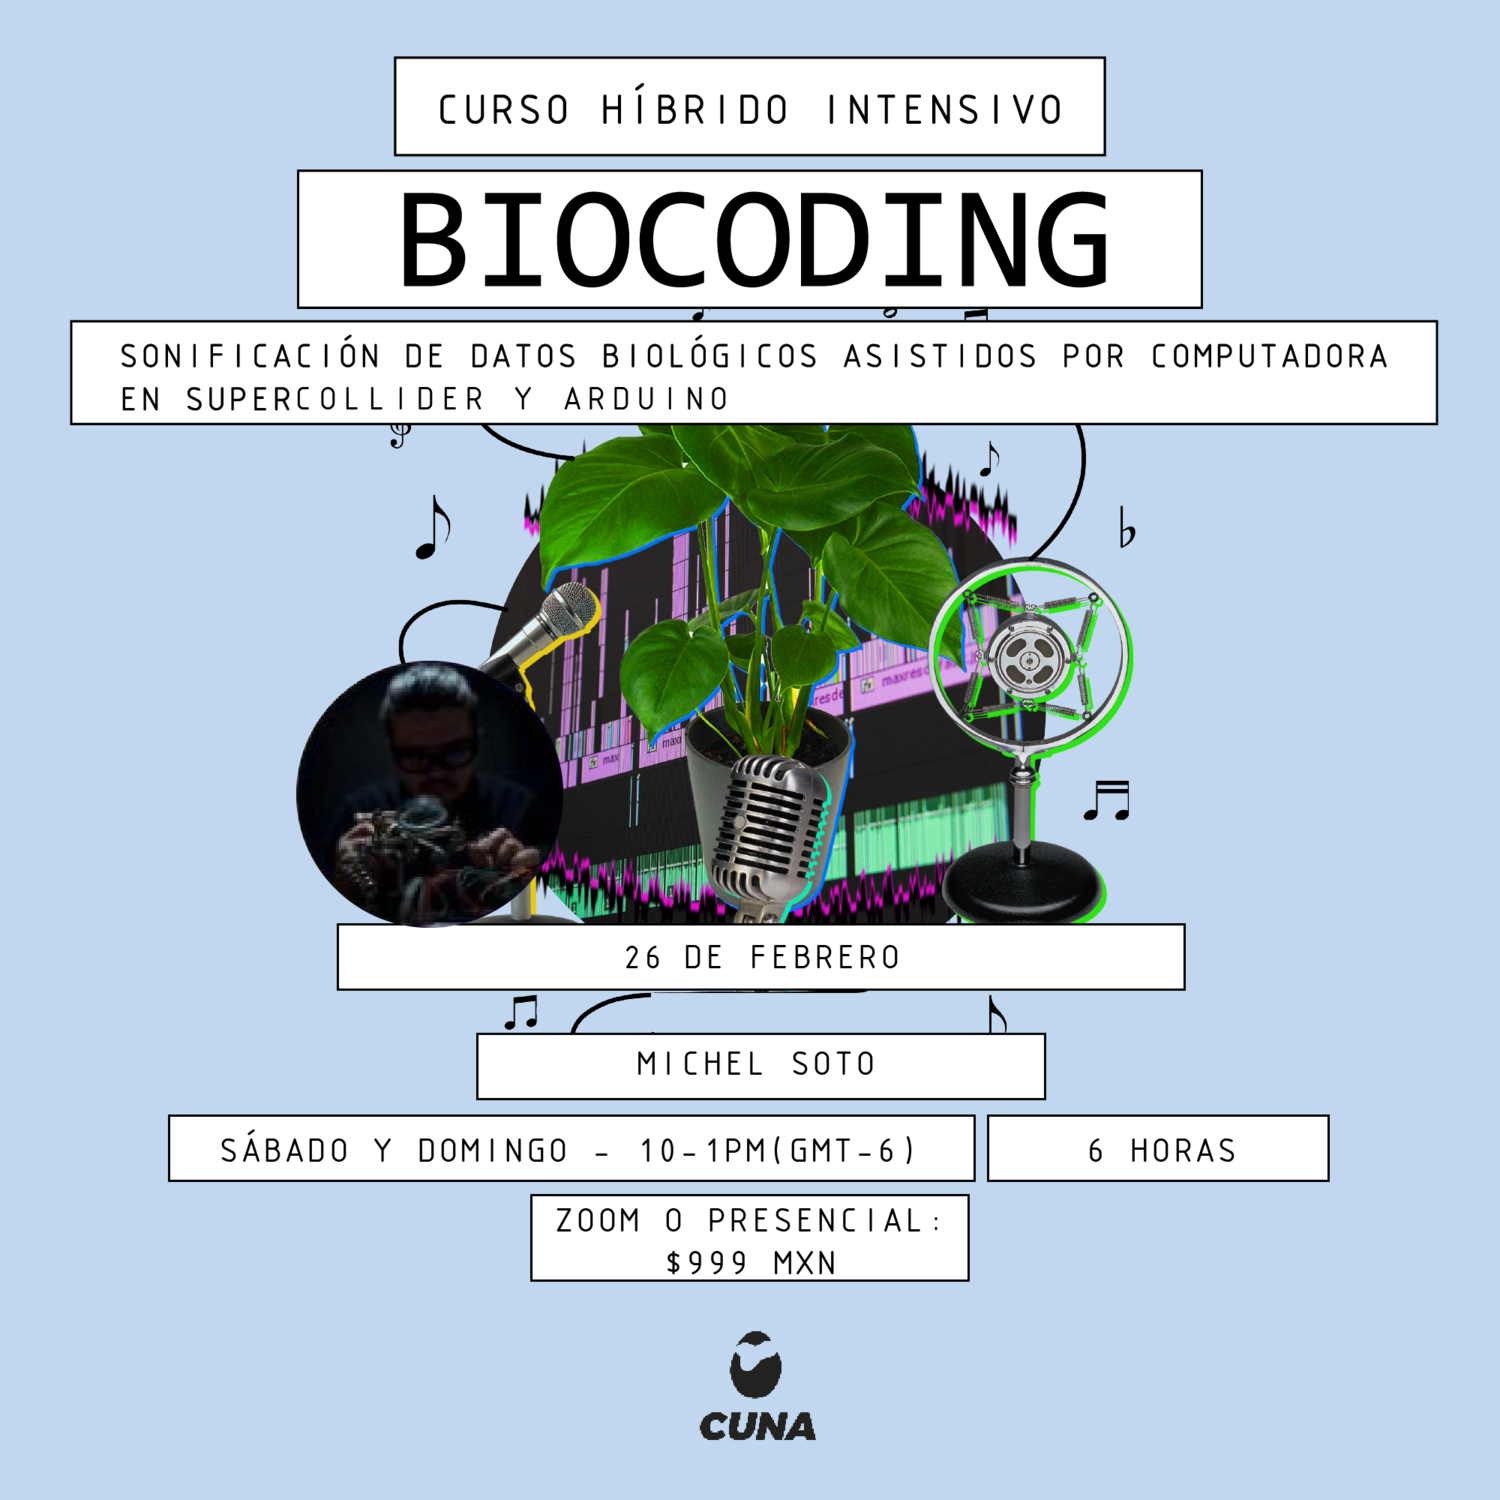 Biocoding: Sonificación de datos biológicos asistidos por computadora en supercollider y arduino